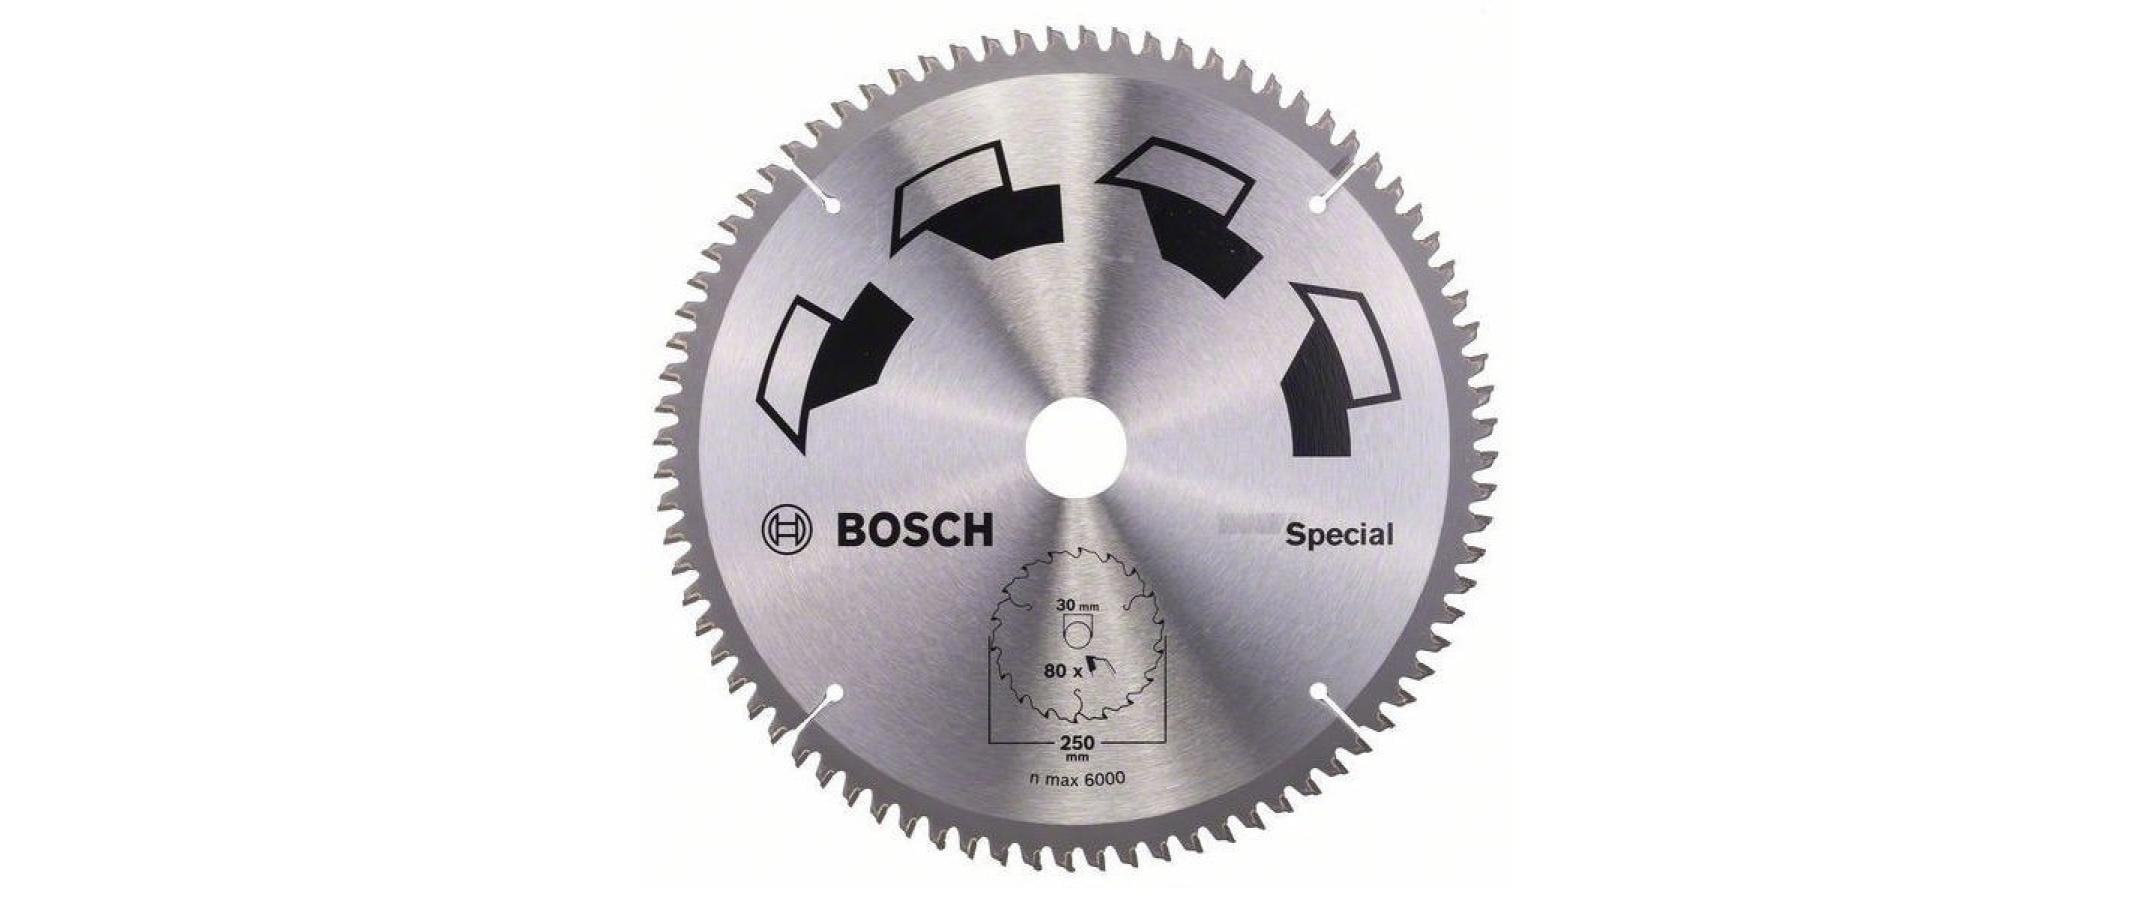 Bosch Kreissägeblatt Special 250 mm